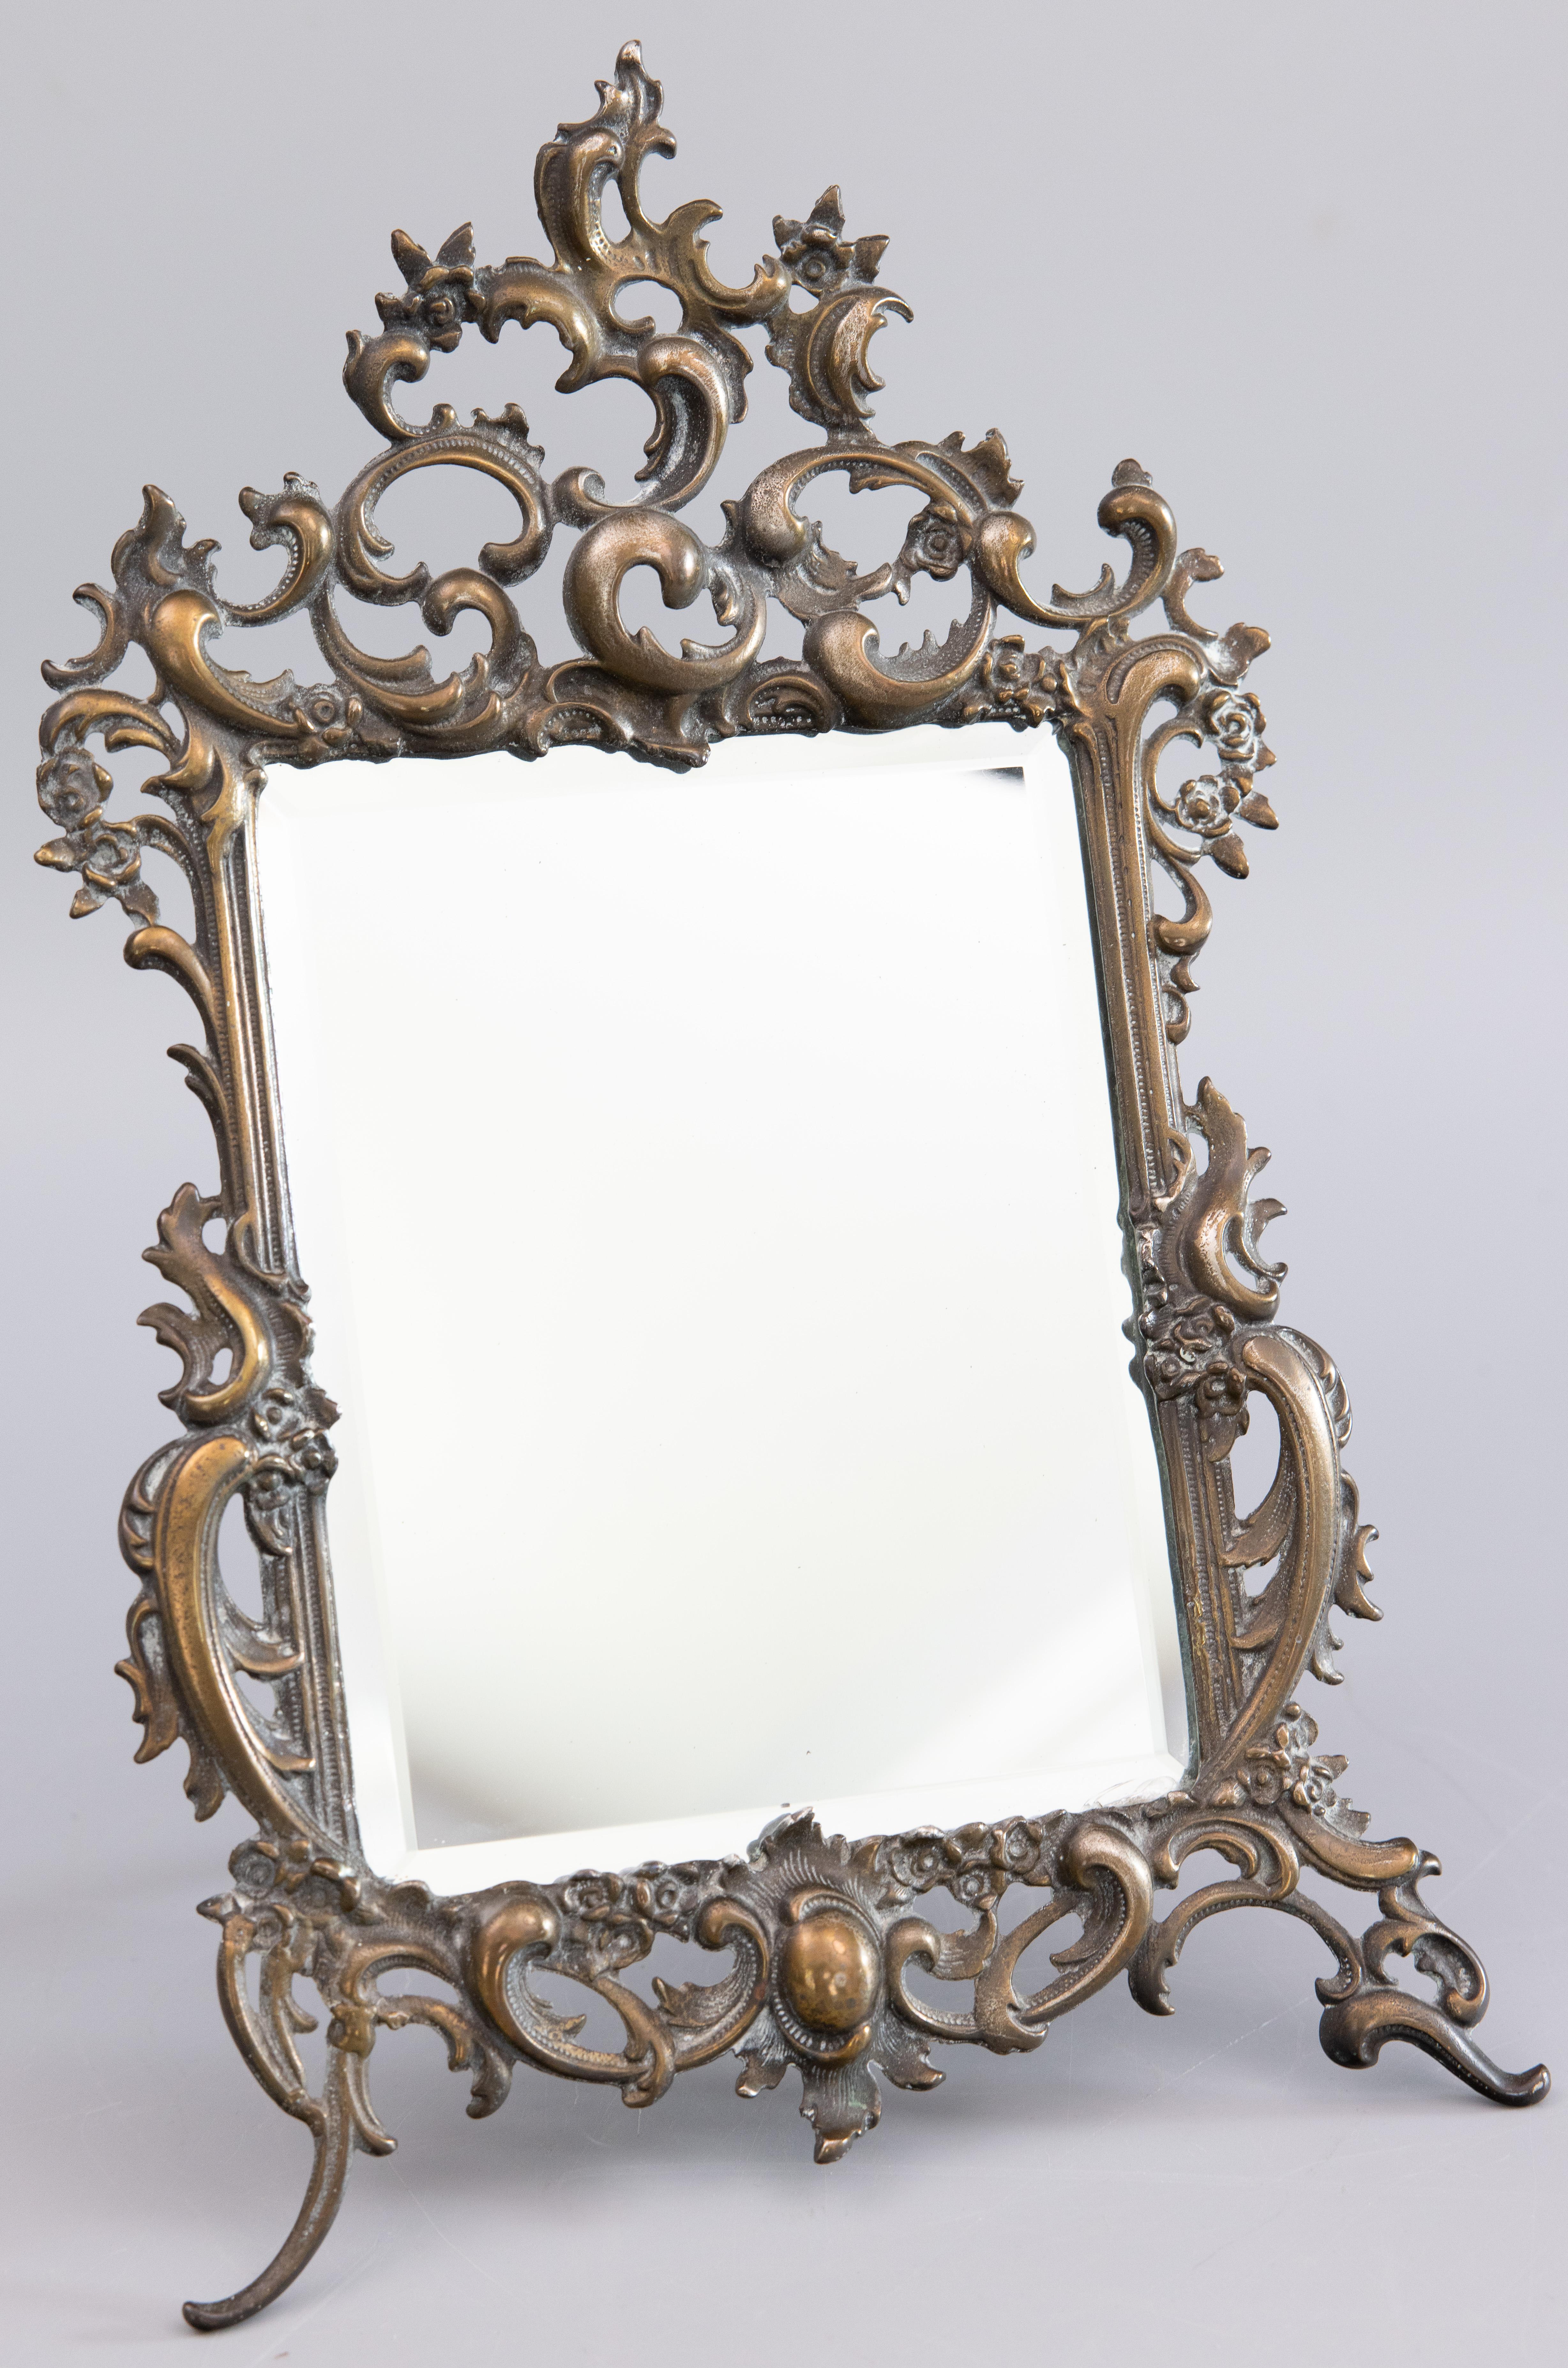 Magnifique miroir de table ou de vanité à dos de chevalet en laiton, de style Rococo, avec une bordure ornée de volutes, vers 1900. Ce beau miroir est bien fait et lourd, pesant 4 livres, avec une belle patine et il conserve le verre biseauté